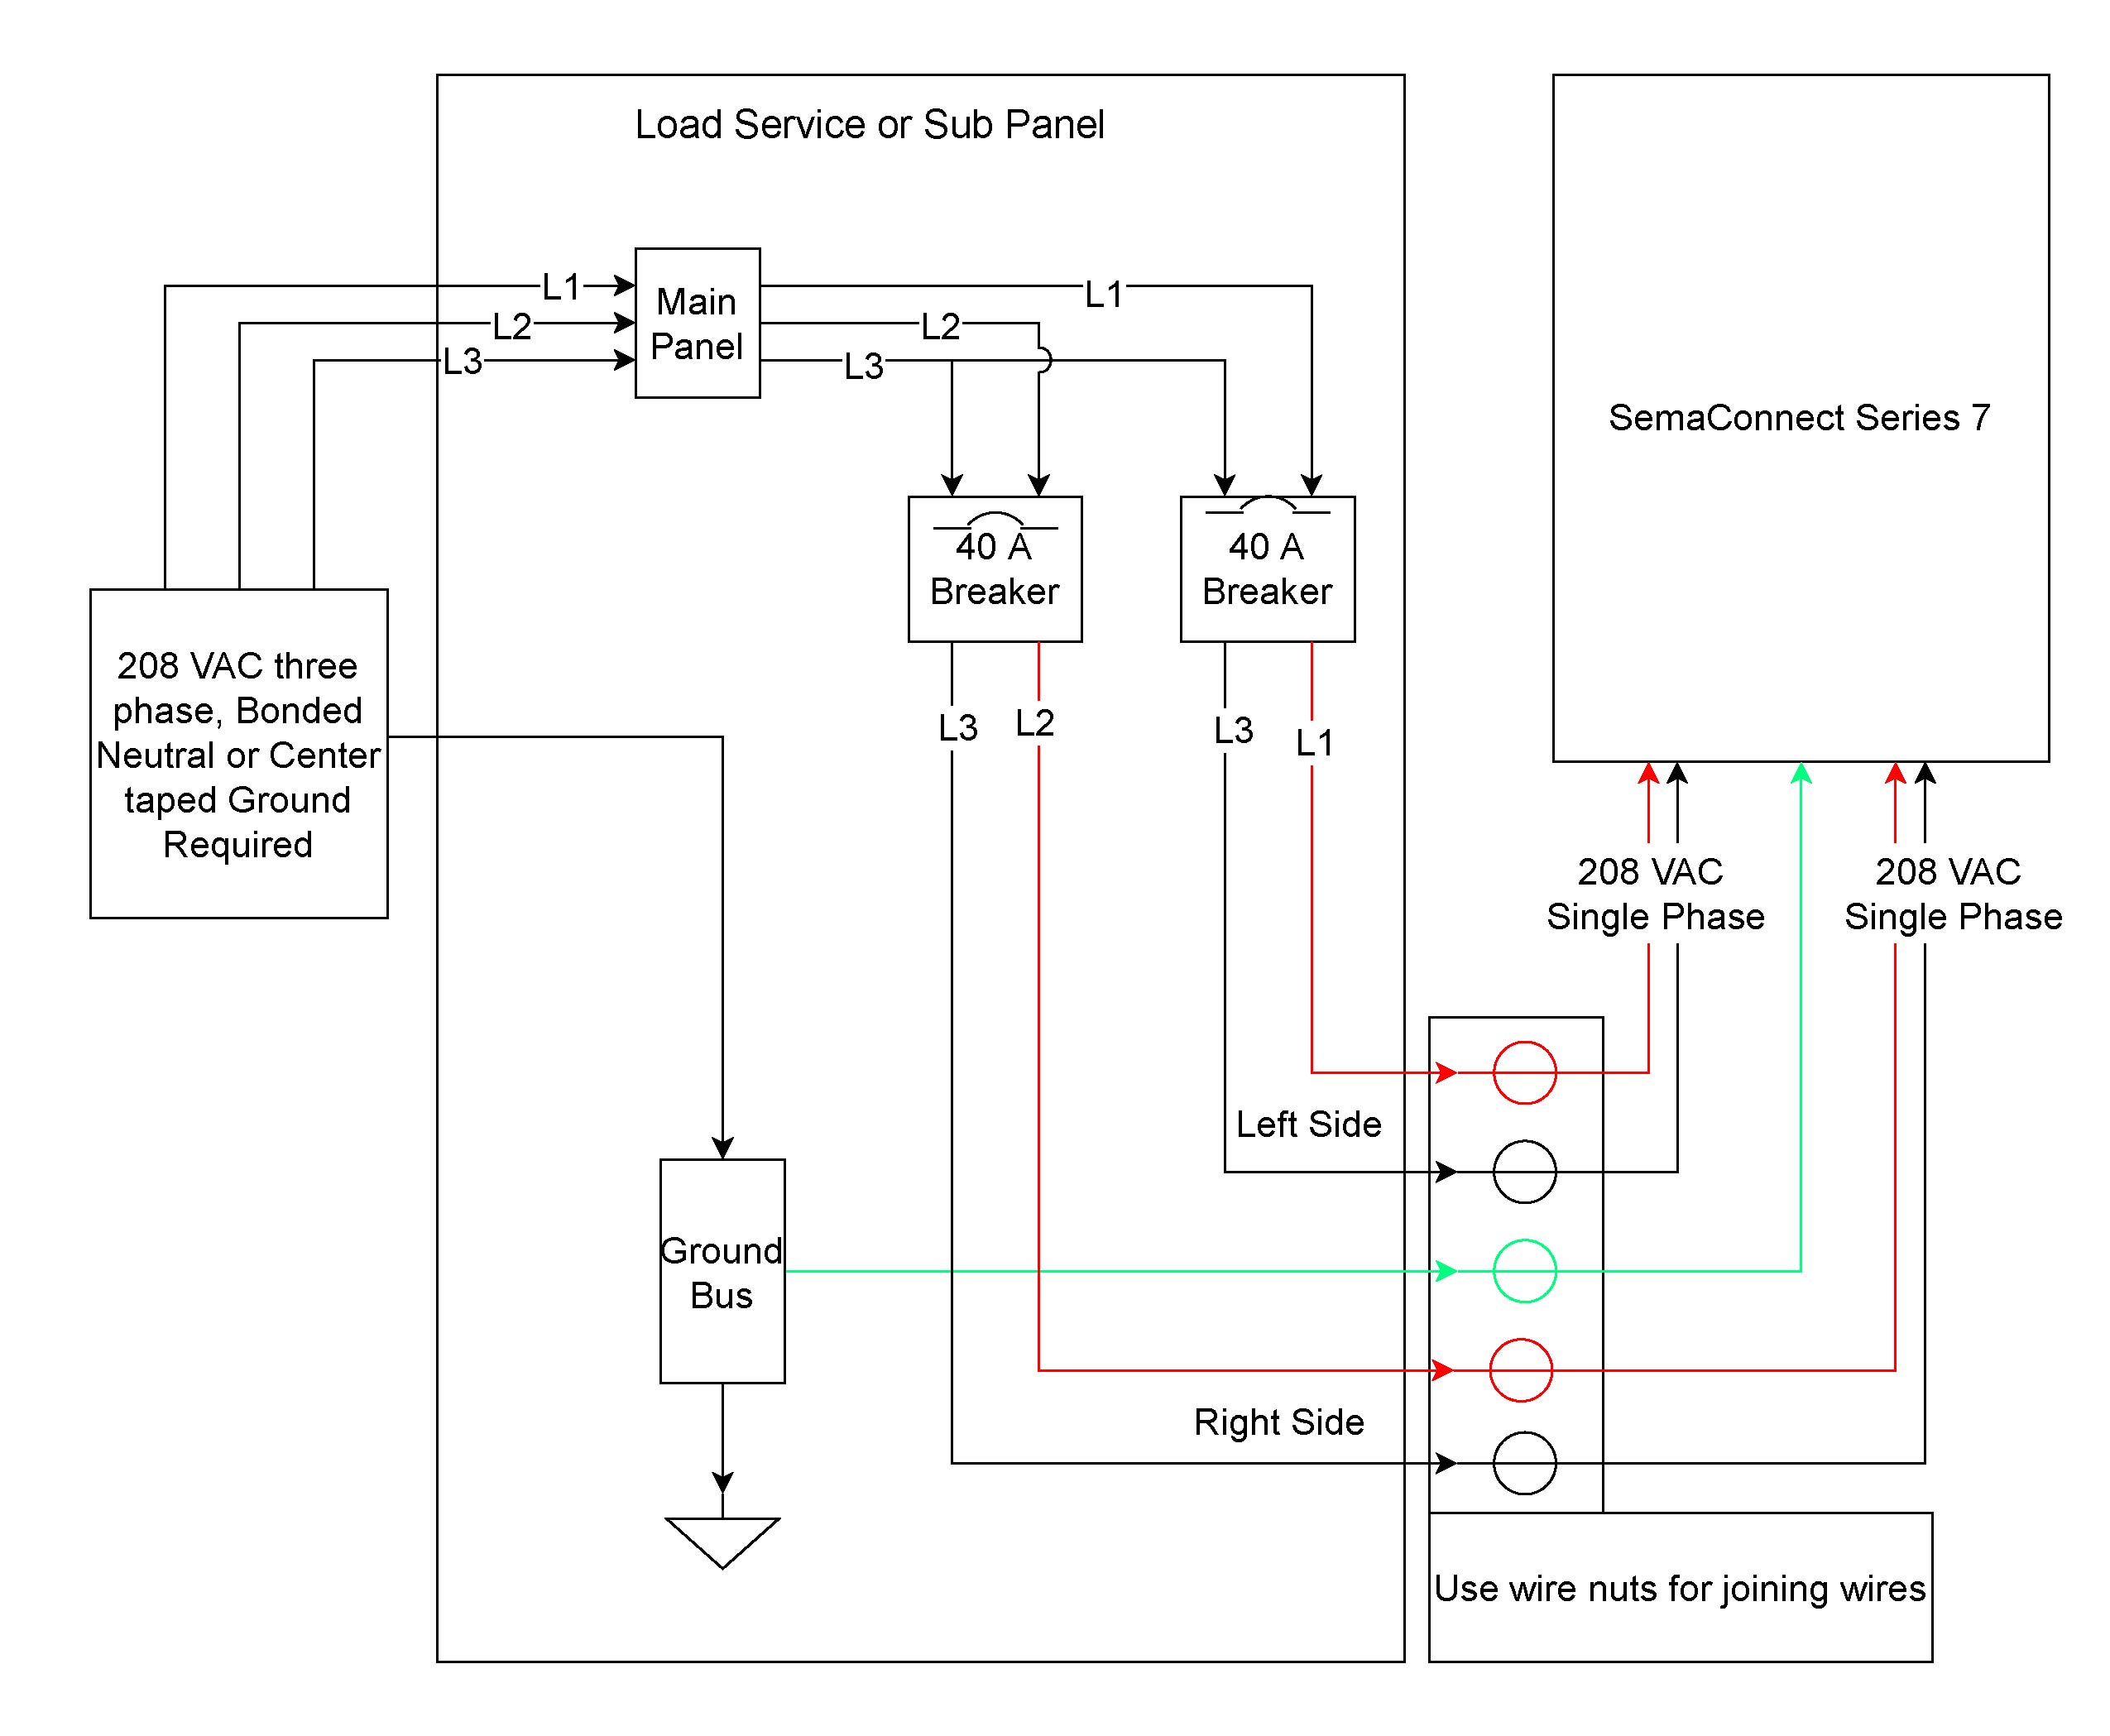 ibanez rg350ex wiring diagram